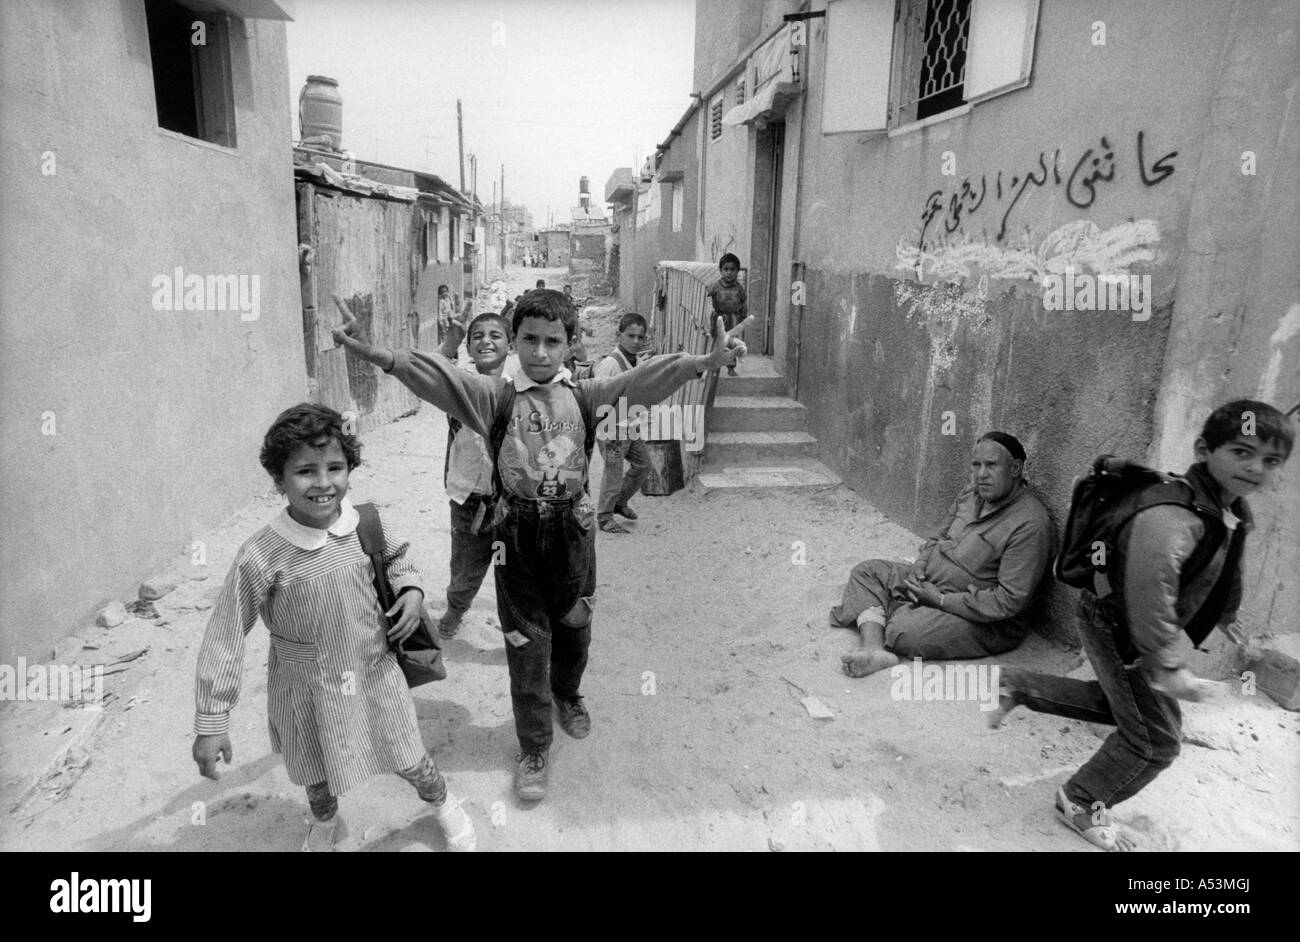 Painet ha1411 236 in bianco e nero la guerra street scene gaza palestina paese nazione in via di sviluppo meno sviluppati dal punto di vista economico Foto Stock